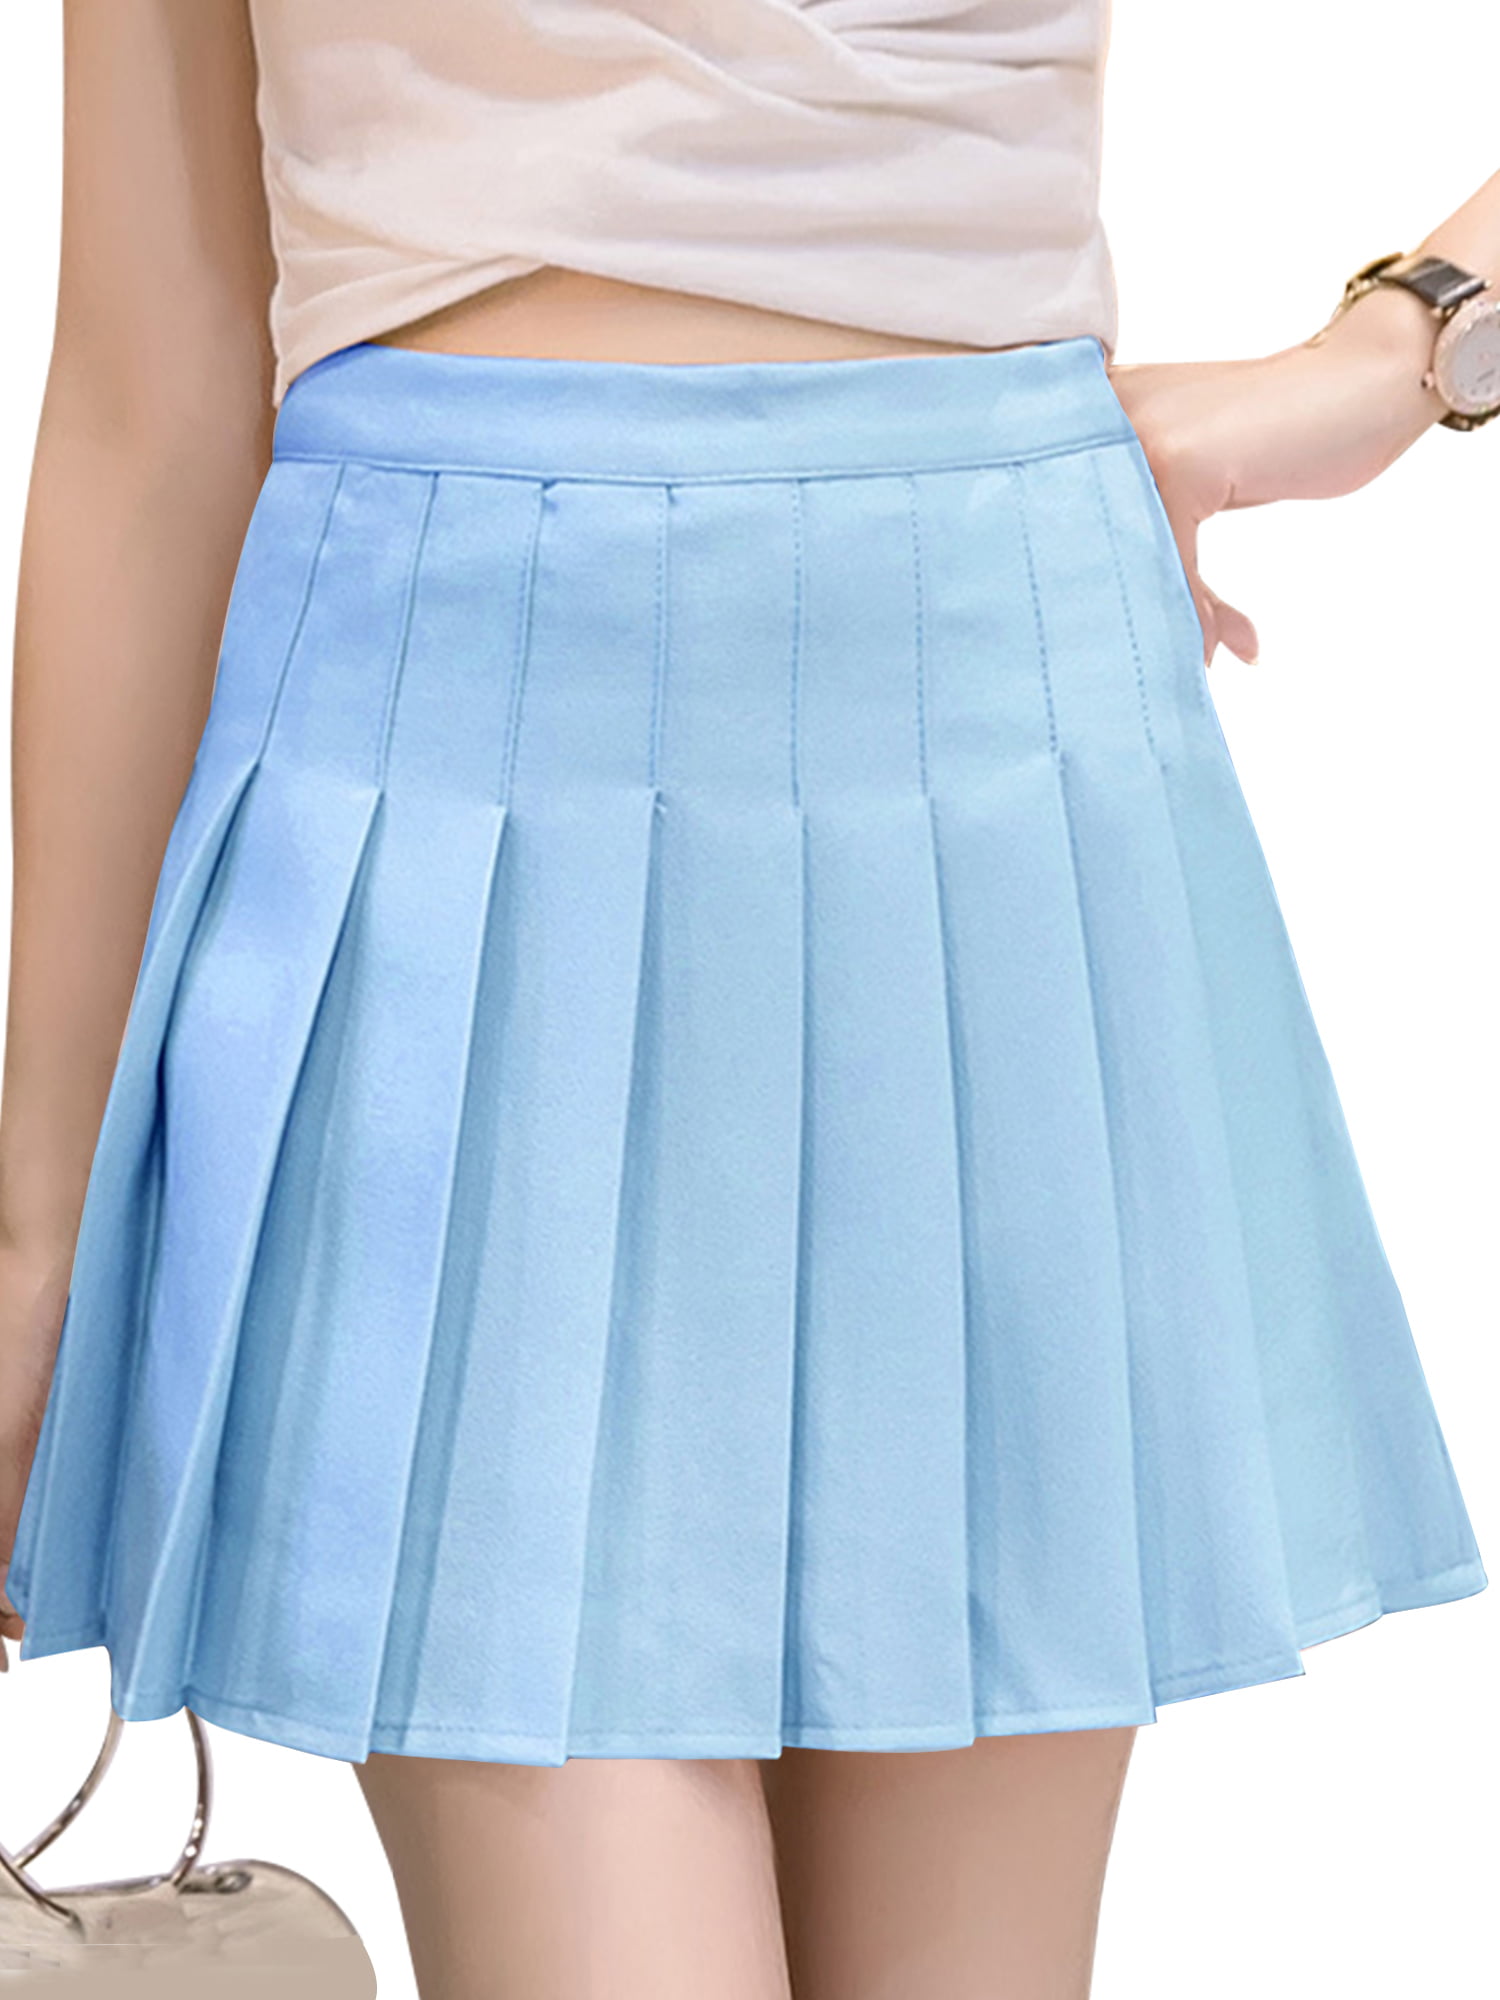 Sexy Dance Women Fashion Summer A Line Zipper High Waist Pleated Skirt Wind Cosplay Skirt 